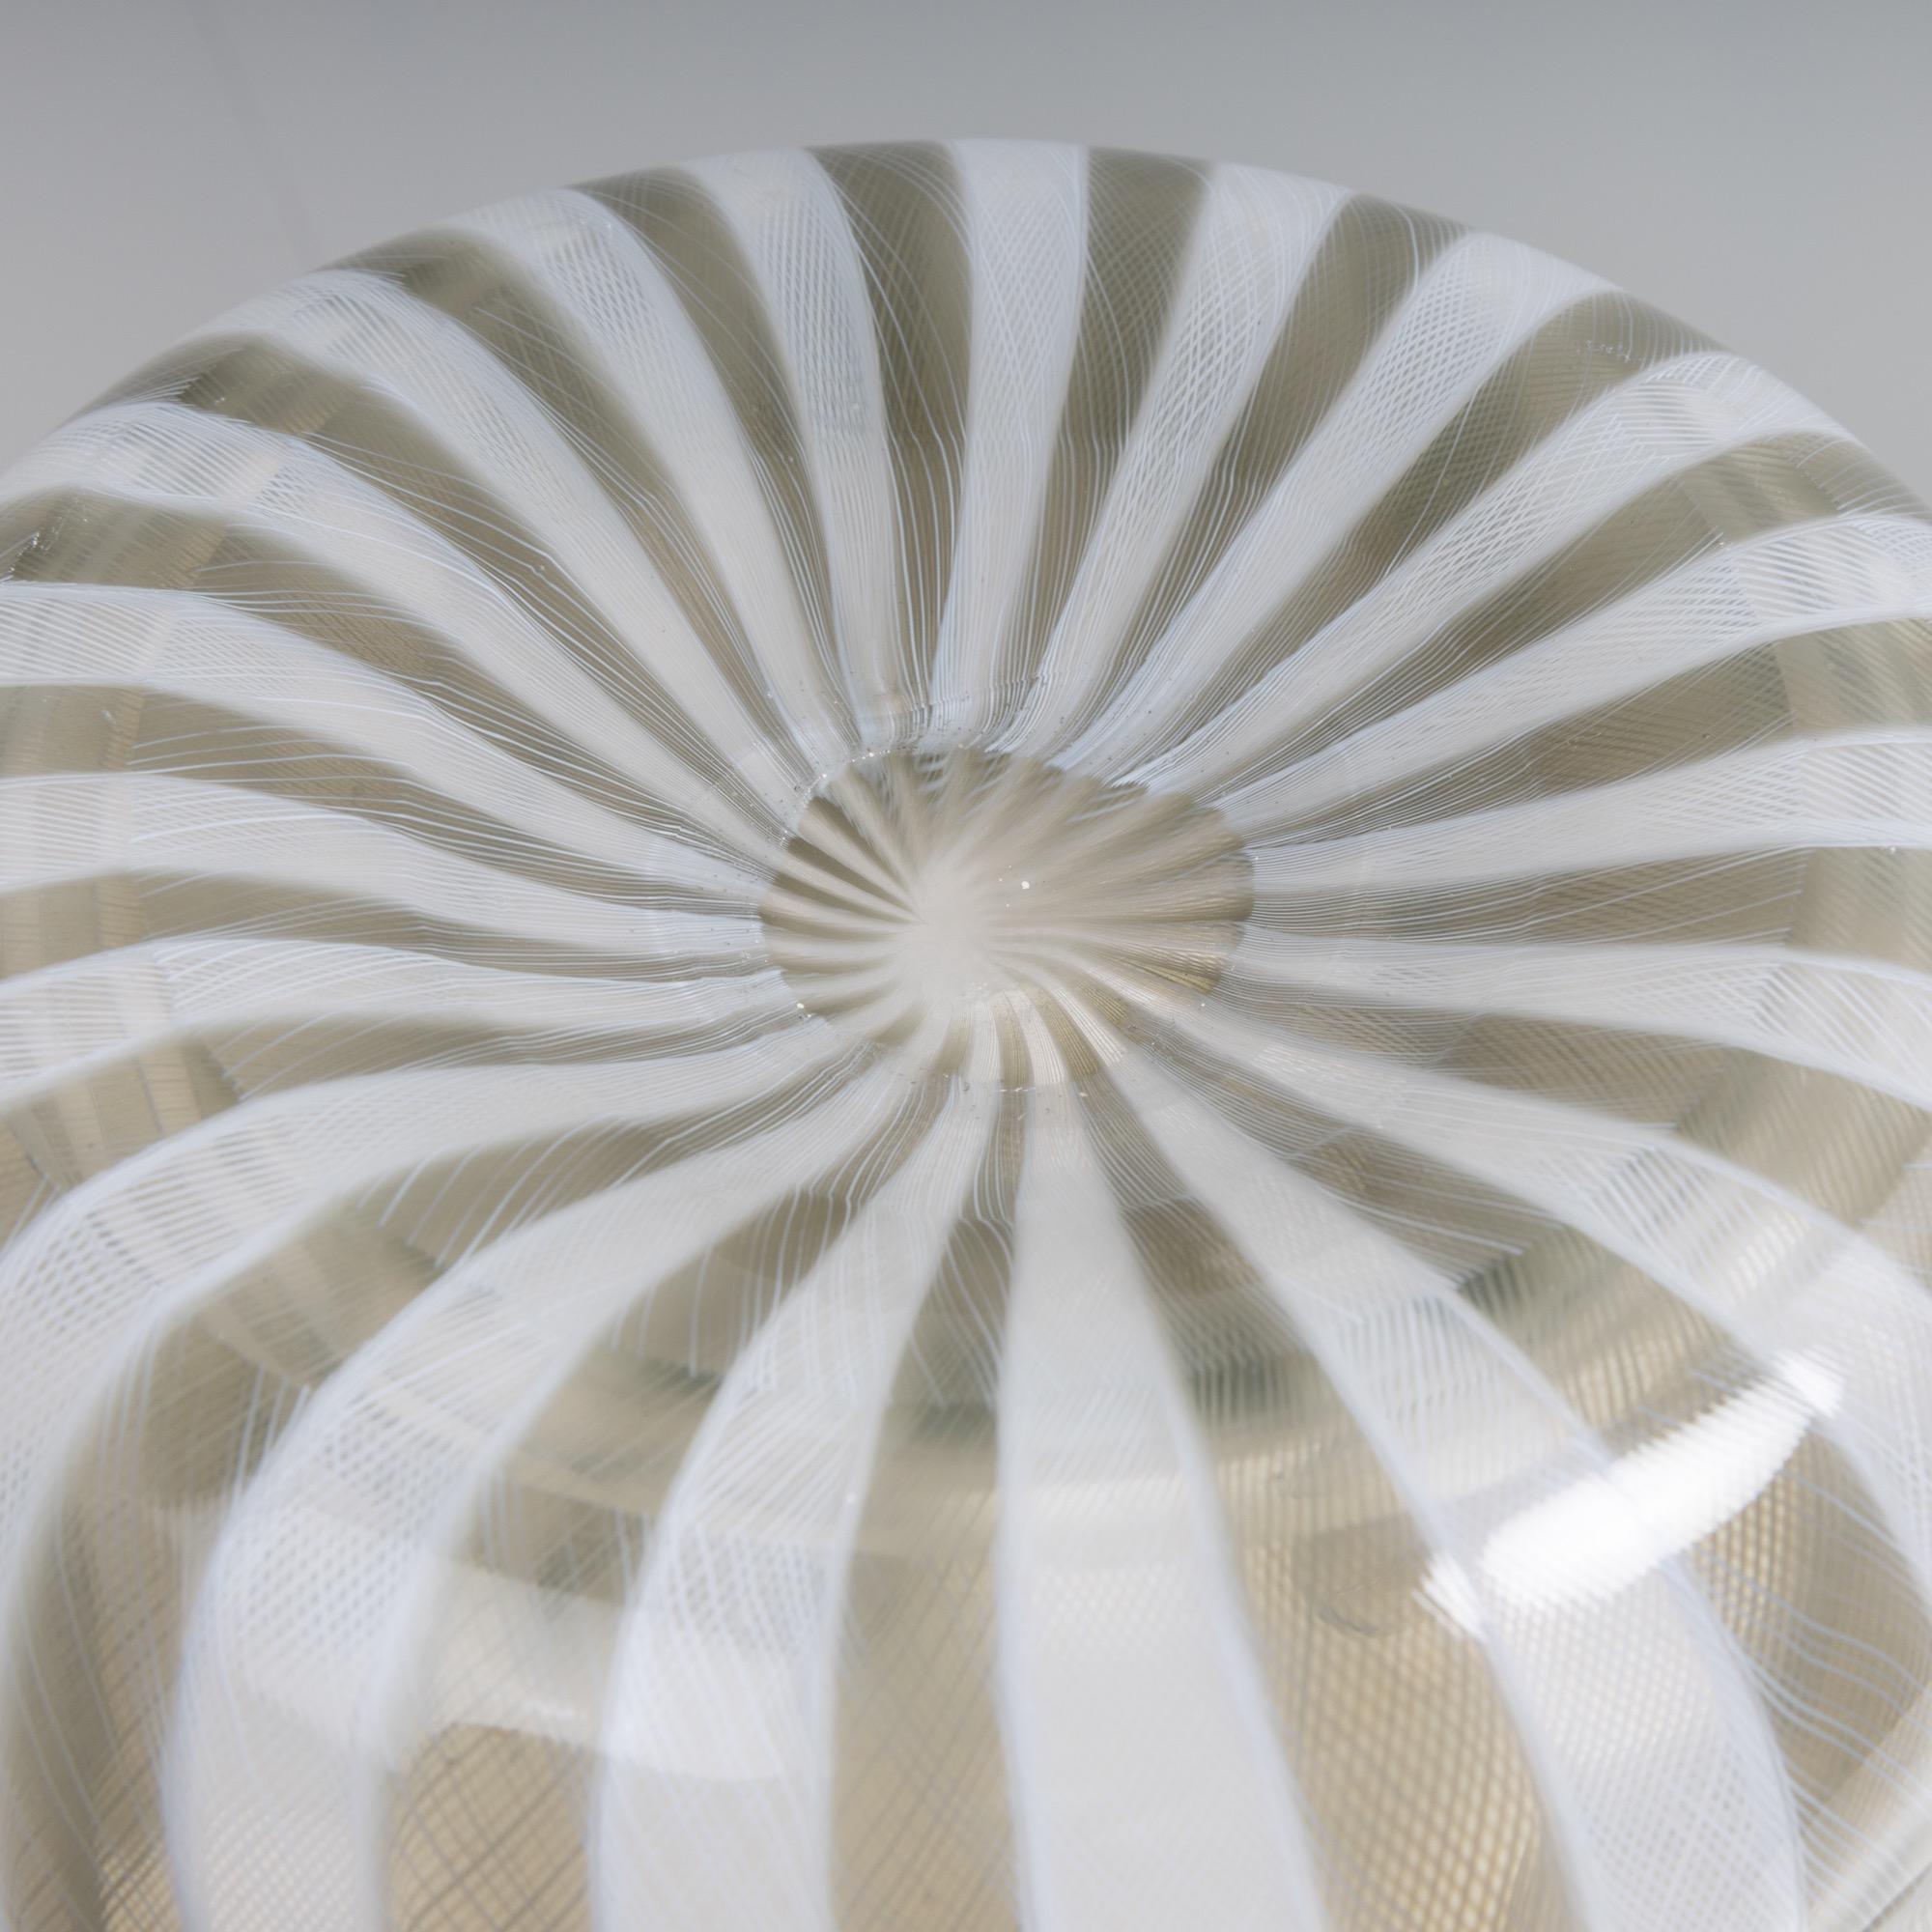 Art Glass Fazzoletto Handkerchief Vase by Fulvio Bianconi